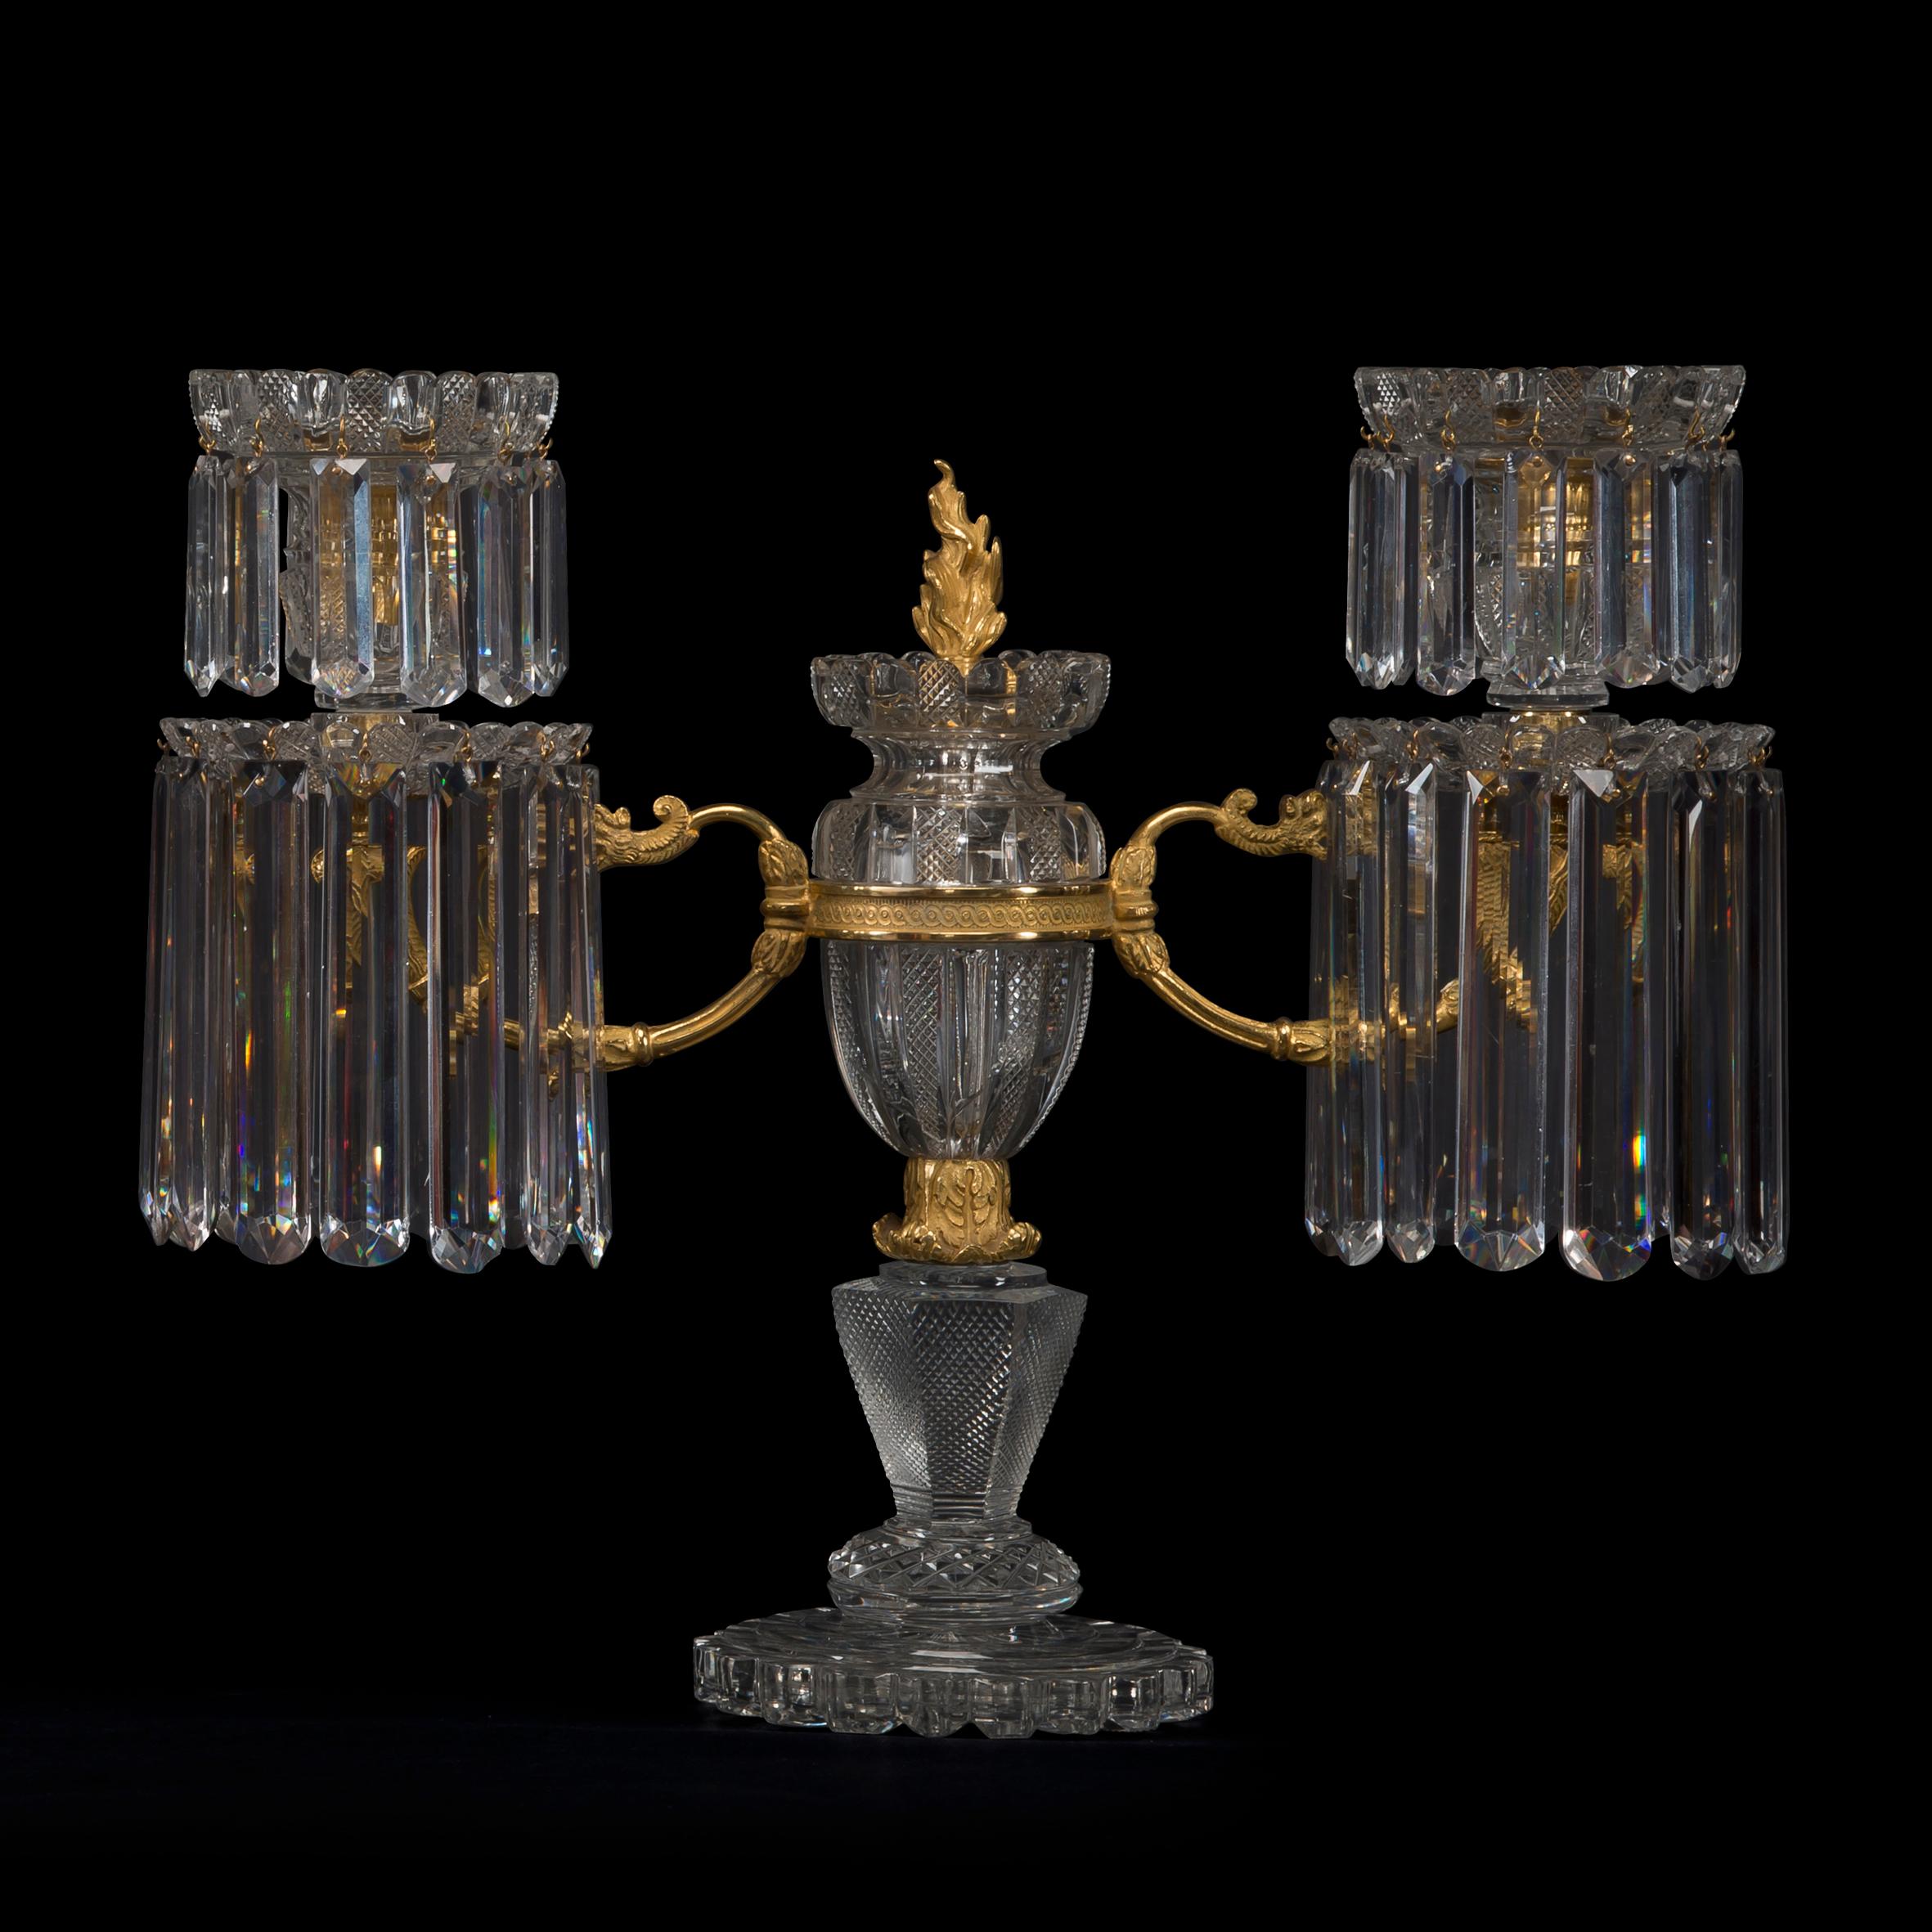 Raro par de candelabros de doble luz de bronce dorado, montados en columna y tallados en lima, de John Blades.

La empresa de John Blades aparece registrada por primera vez en la guía de Londres de 1783, en el número 5 de Ludgate Hill, y